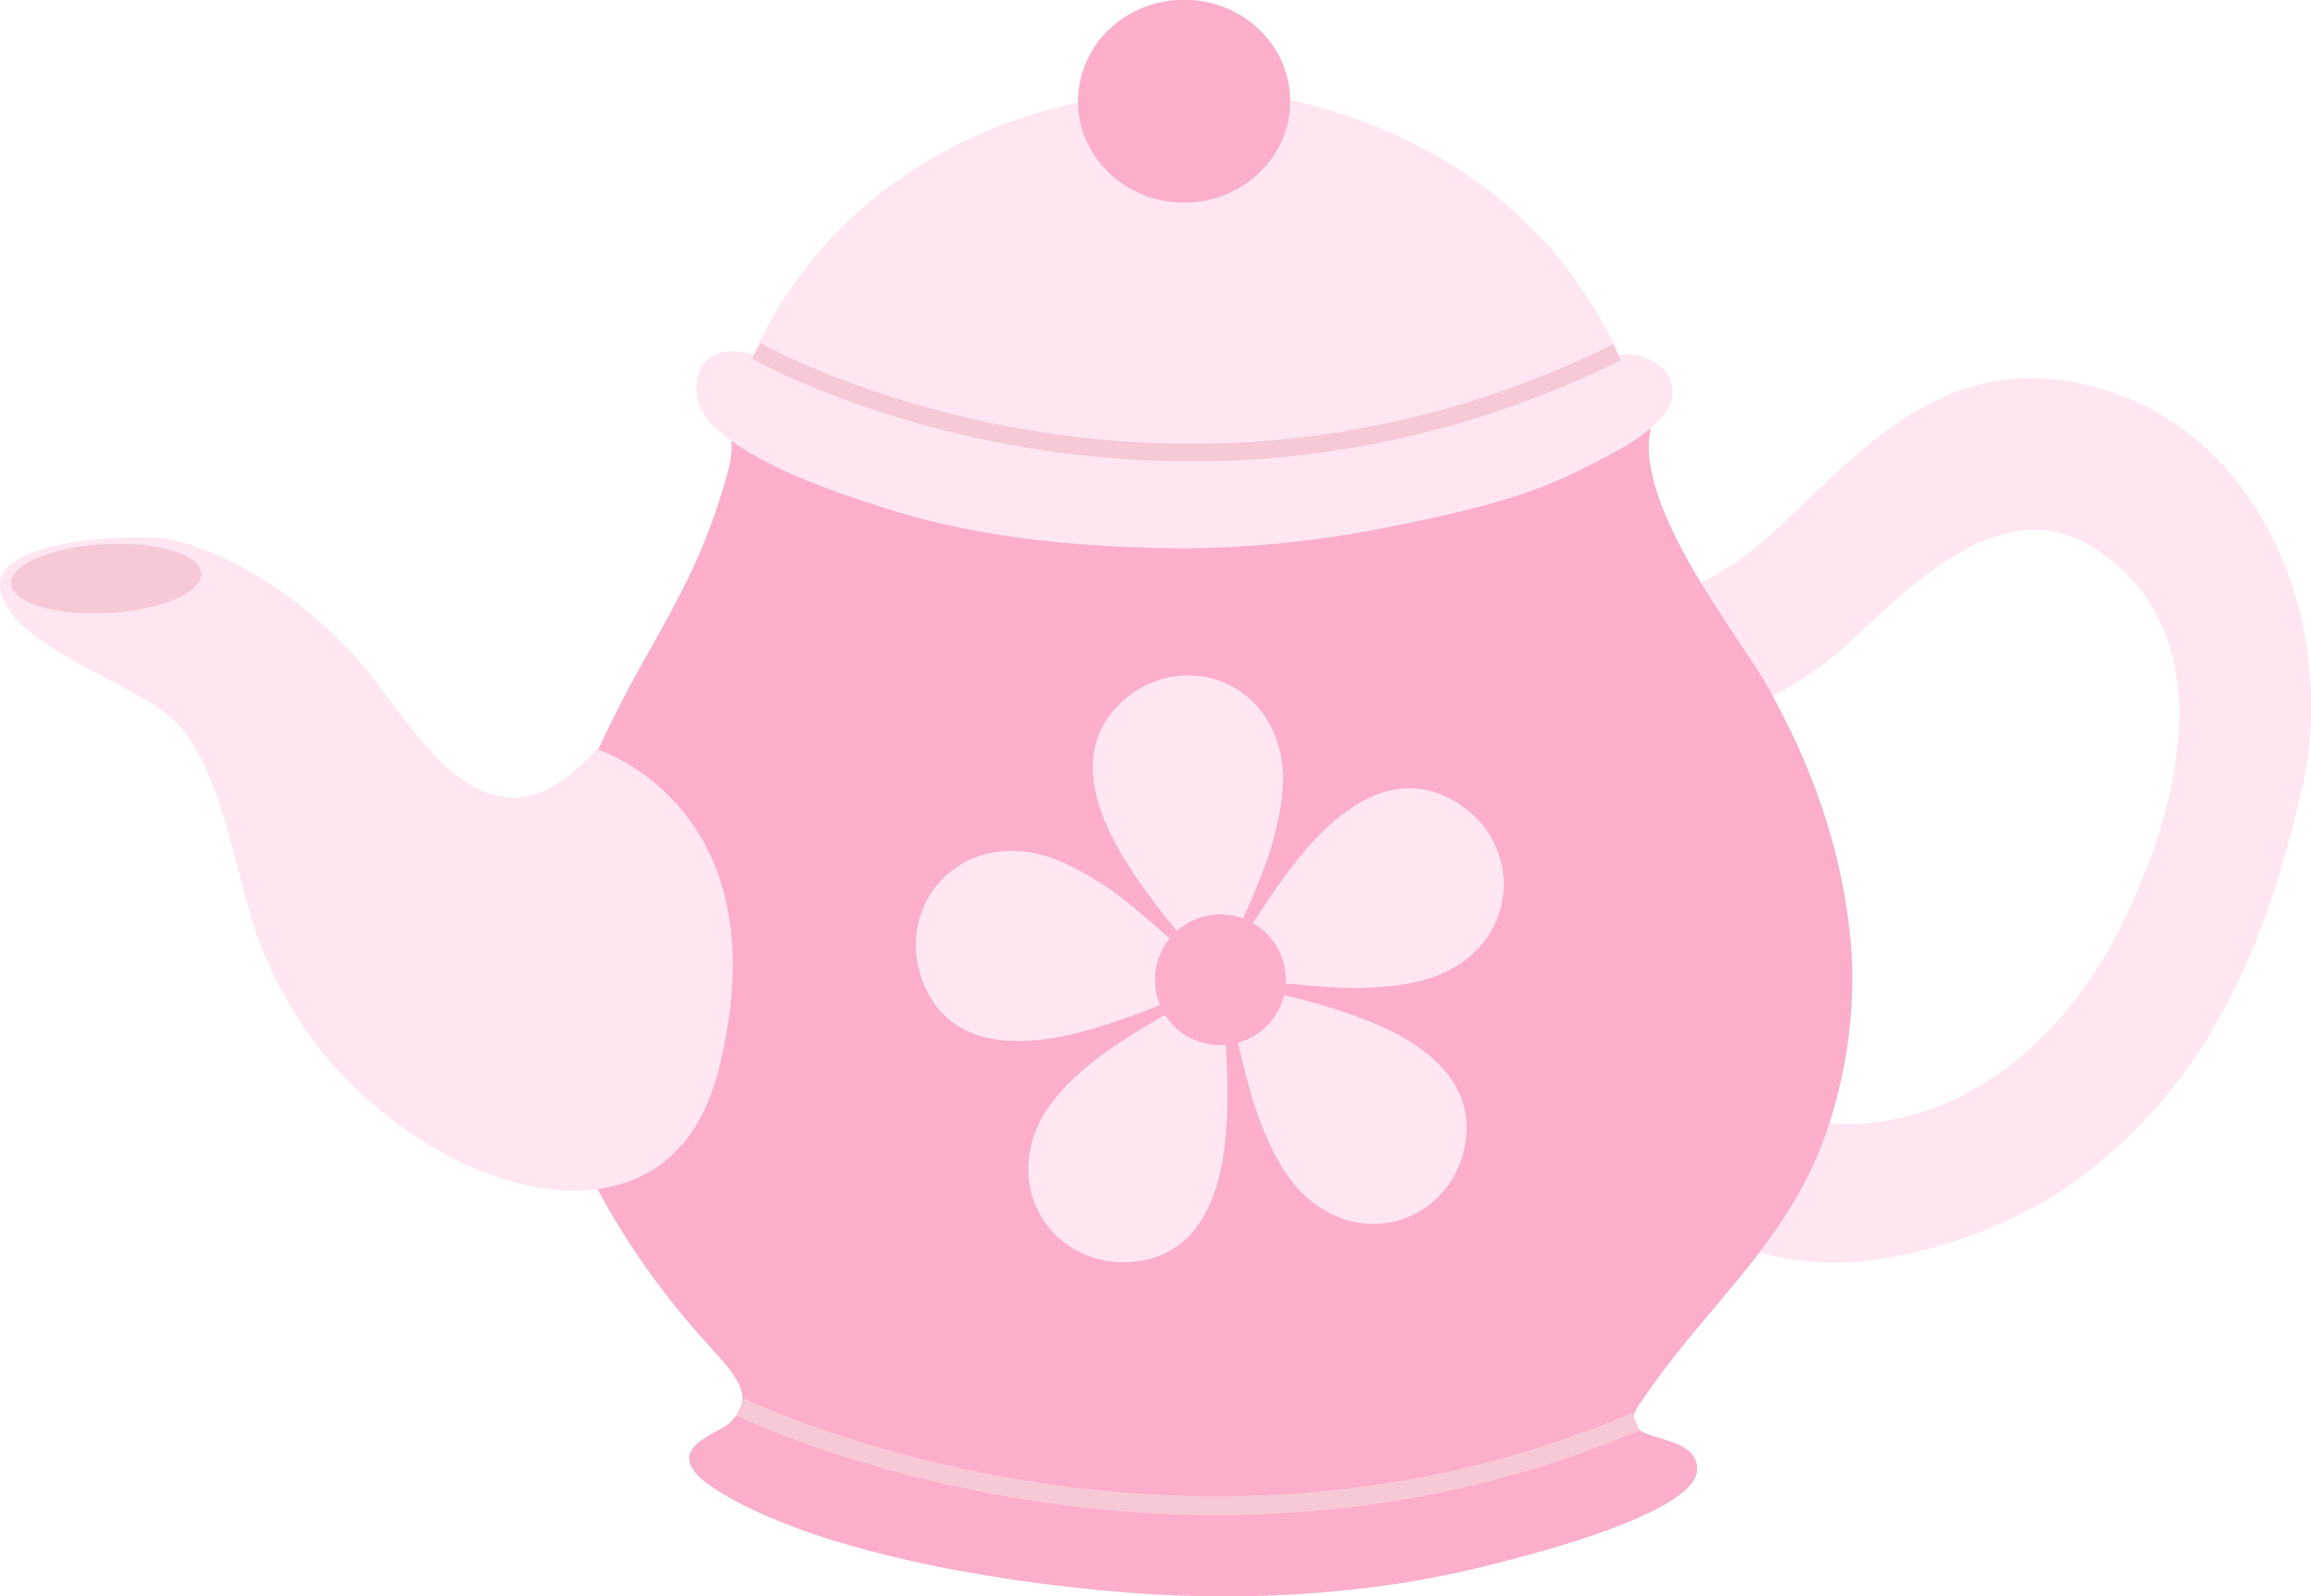 Cute tea pot clipart